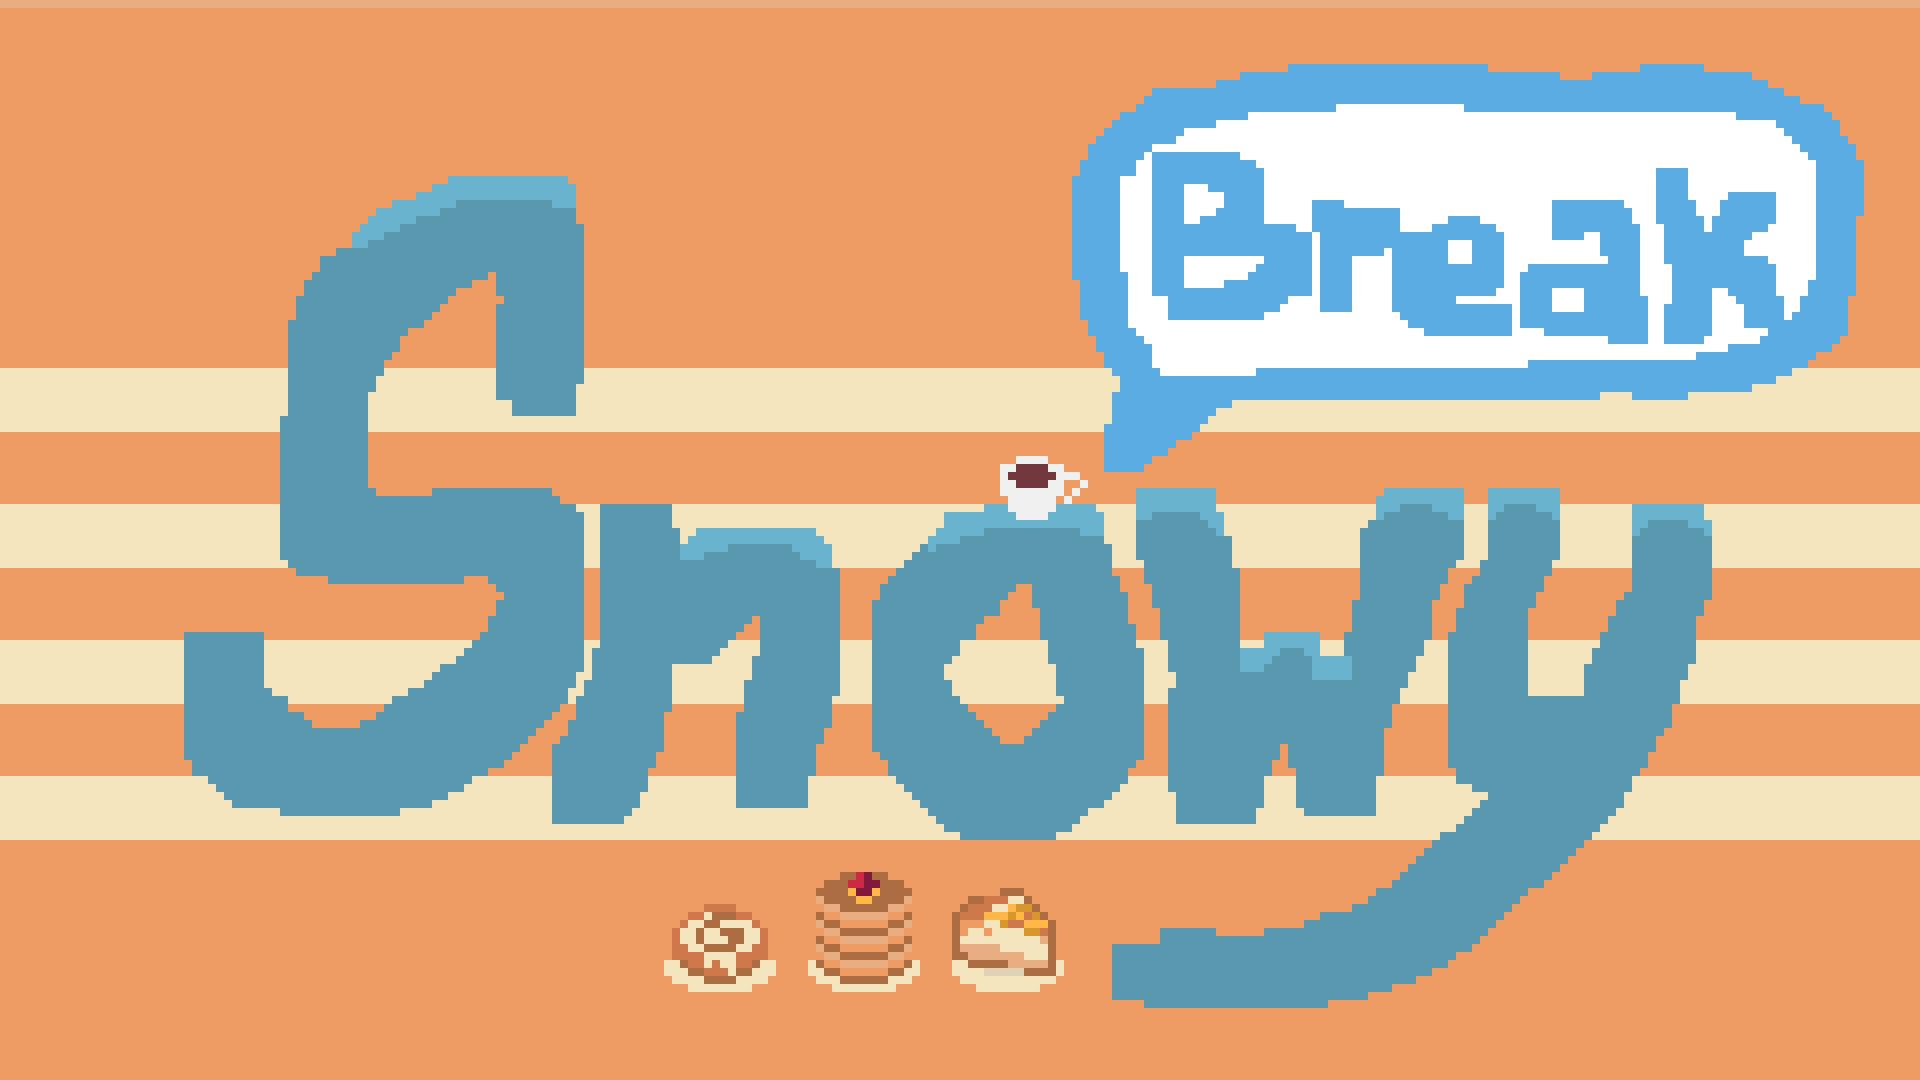 Snowy Break